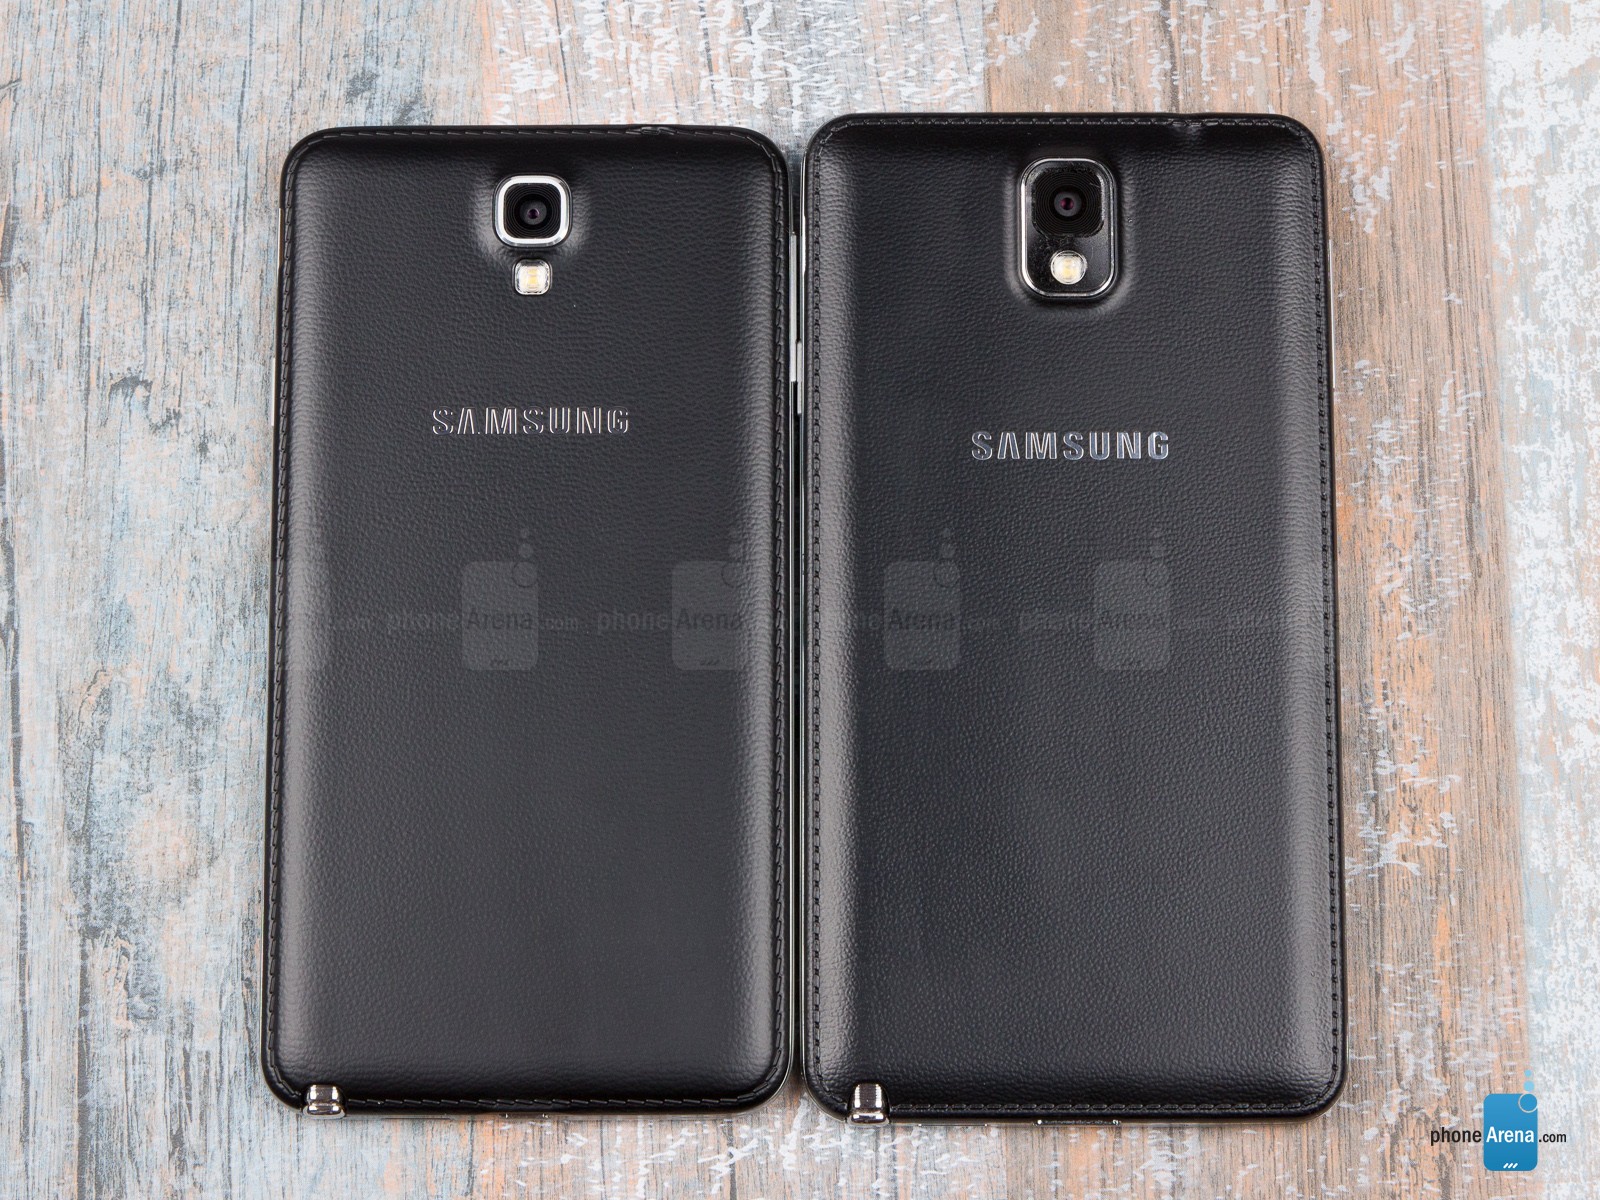 Mặt lưng của Galaxy Note 3 Neo cũng được áp dụng chất liệu nhựa giả gia tương tự như Galaxy Note 3.